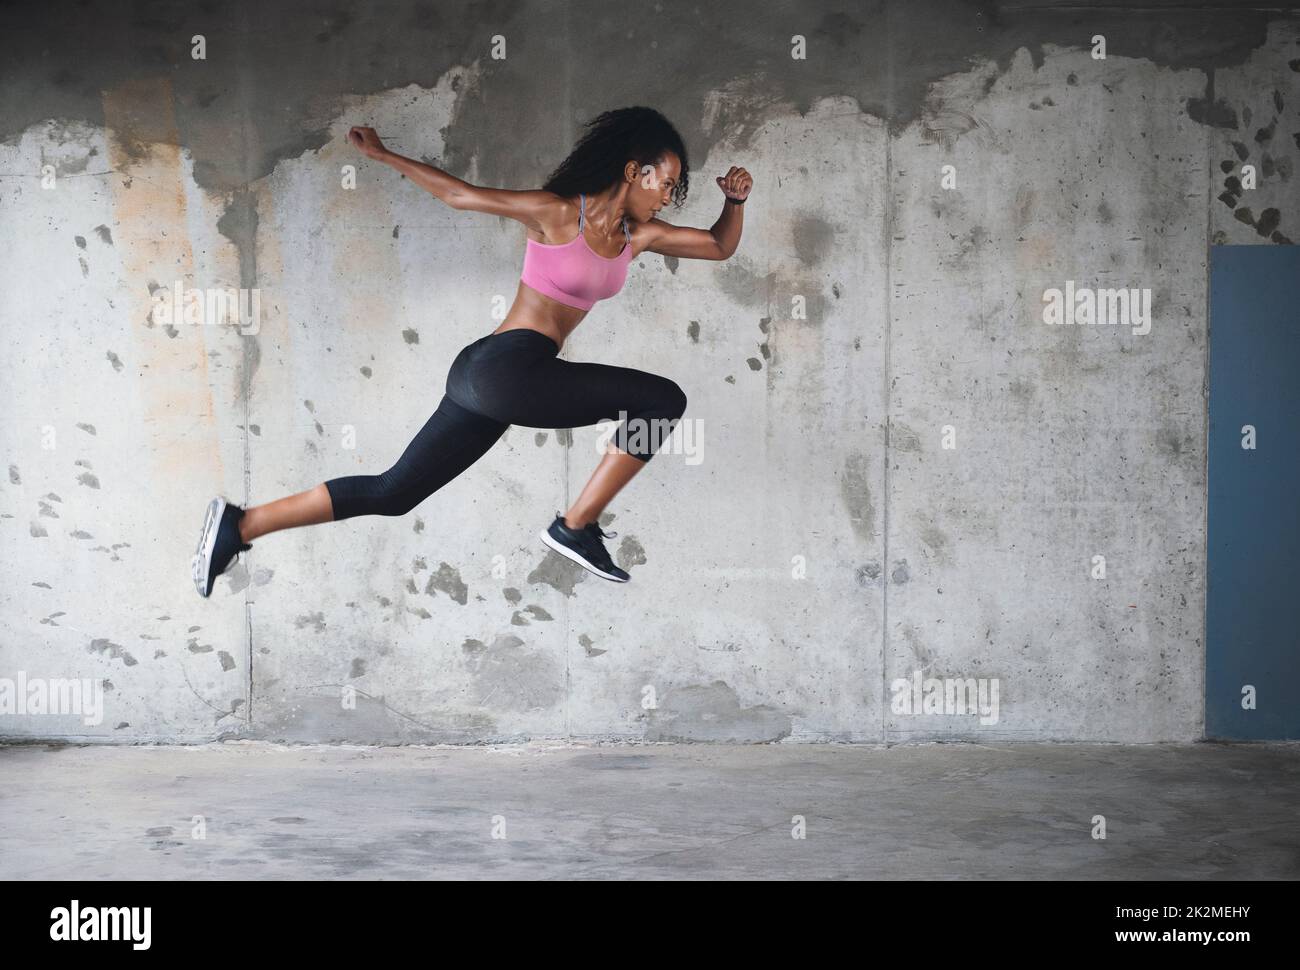 Zurück in Aktion. Ganzkörperaufnahme einer athletischen jungen Sportlerin, die im Freien in der Luft gegen eine Wand springt. Stockfoto